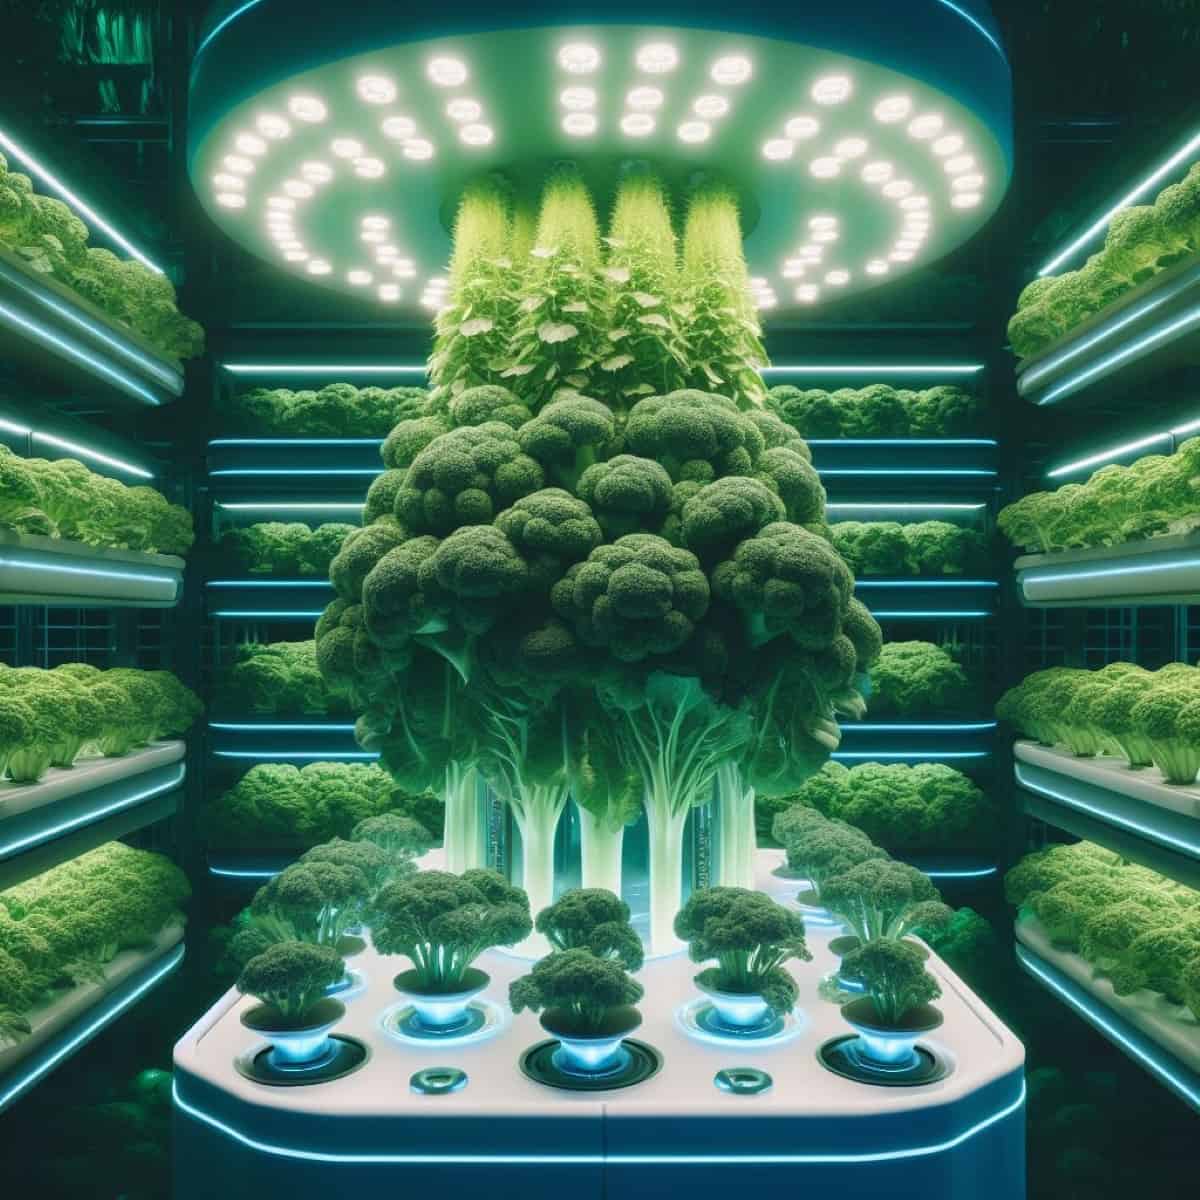 Broccoli Growing in Hydroponic Farm